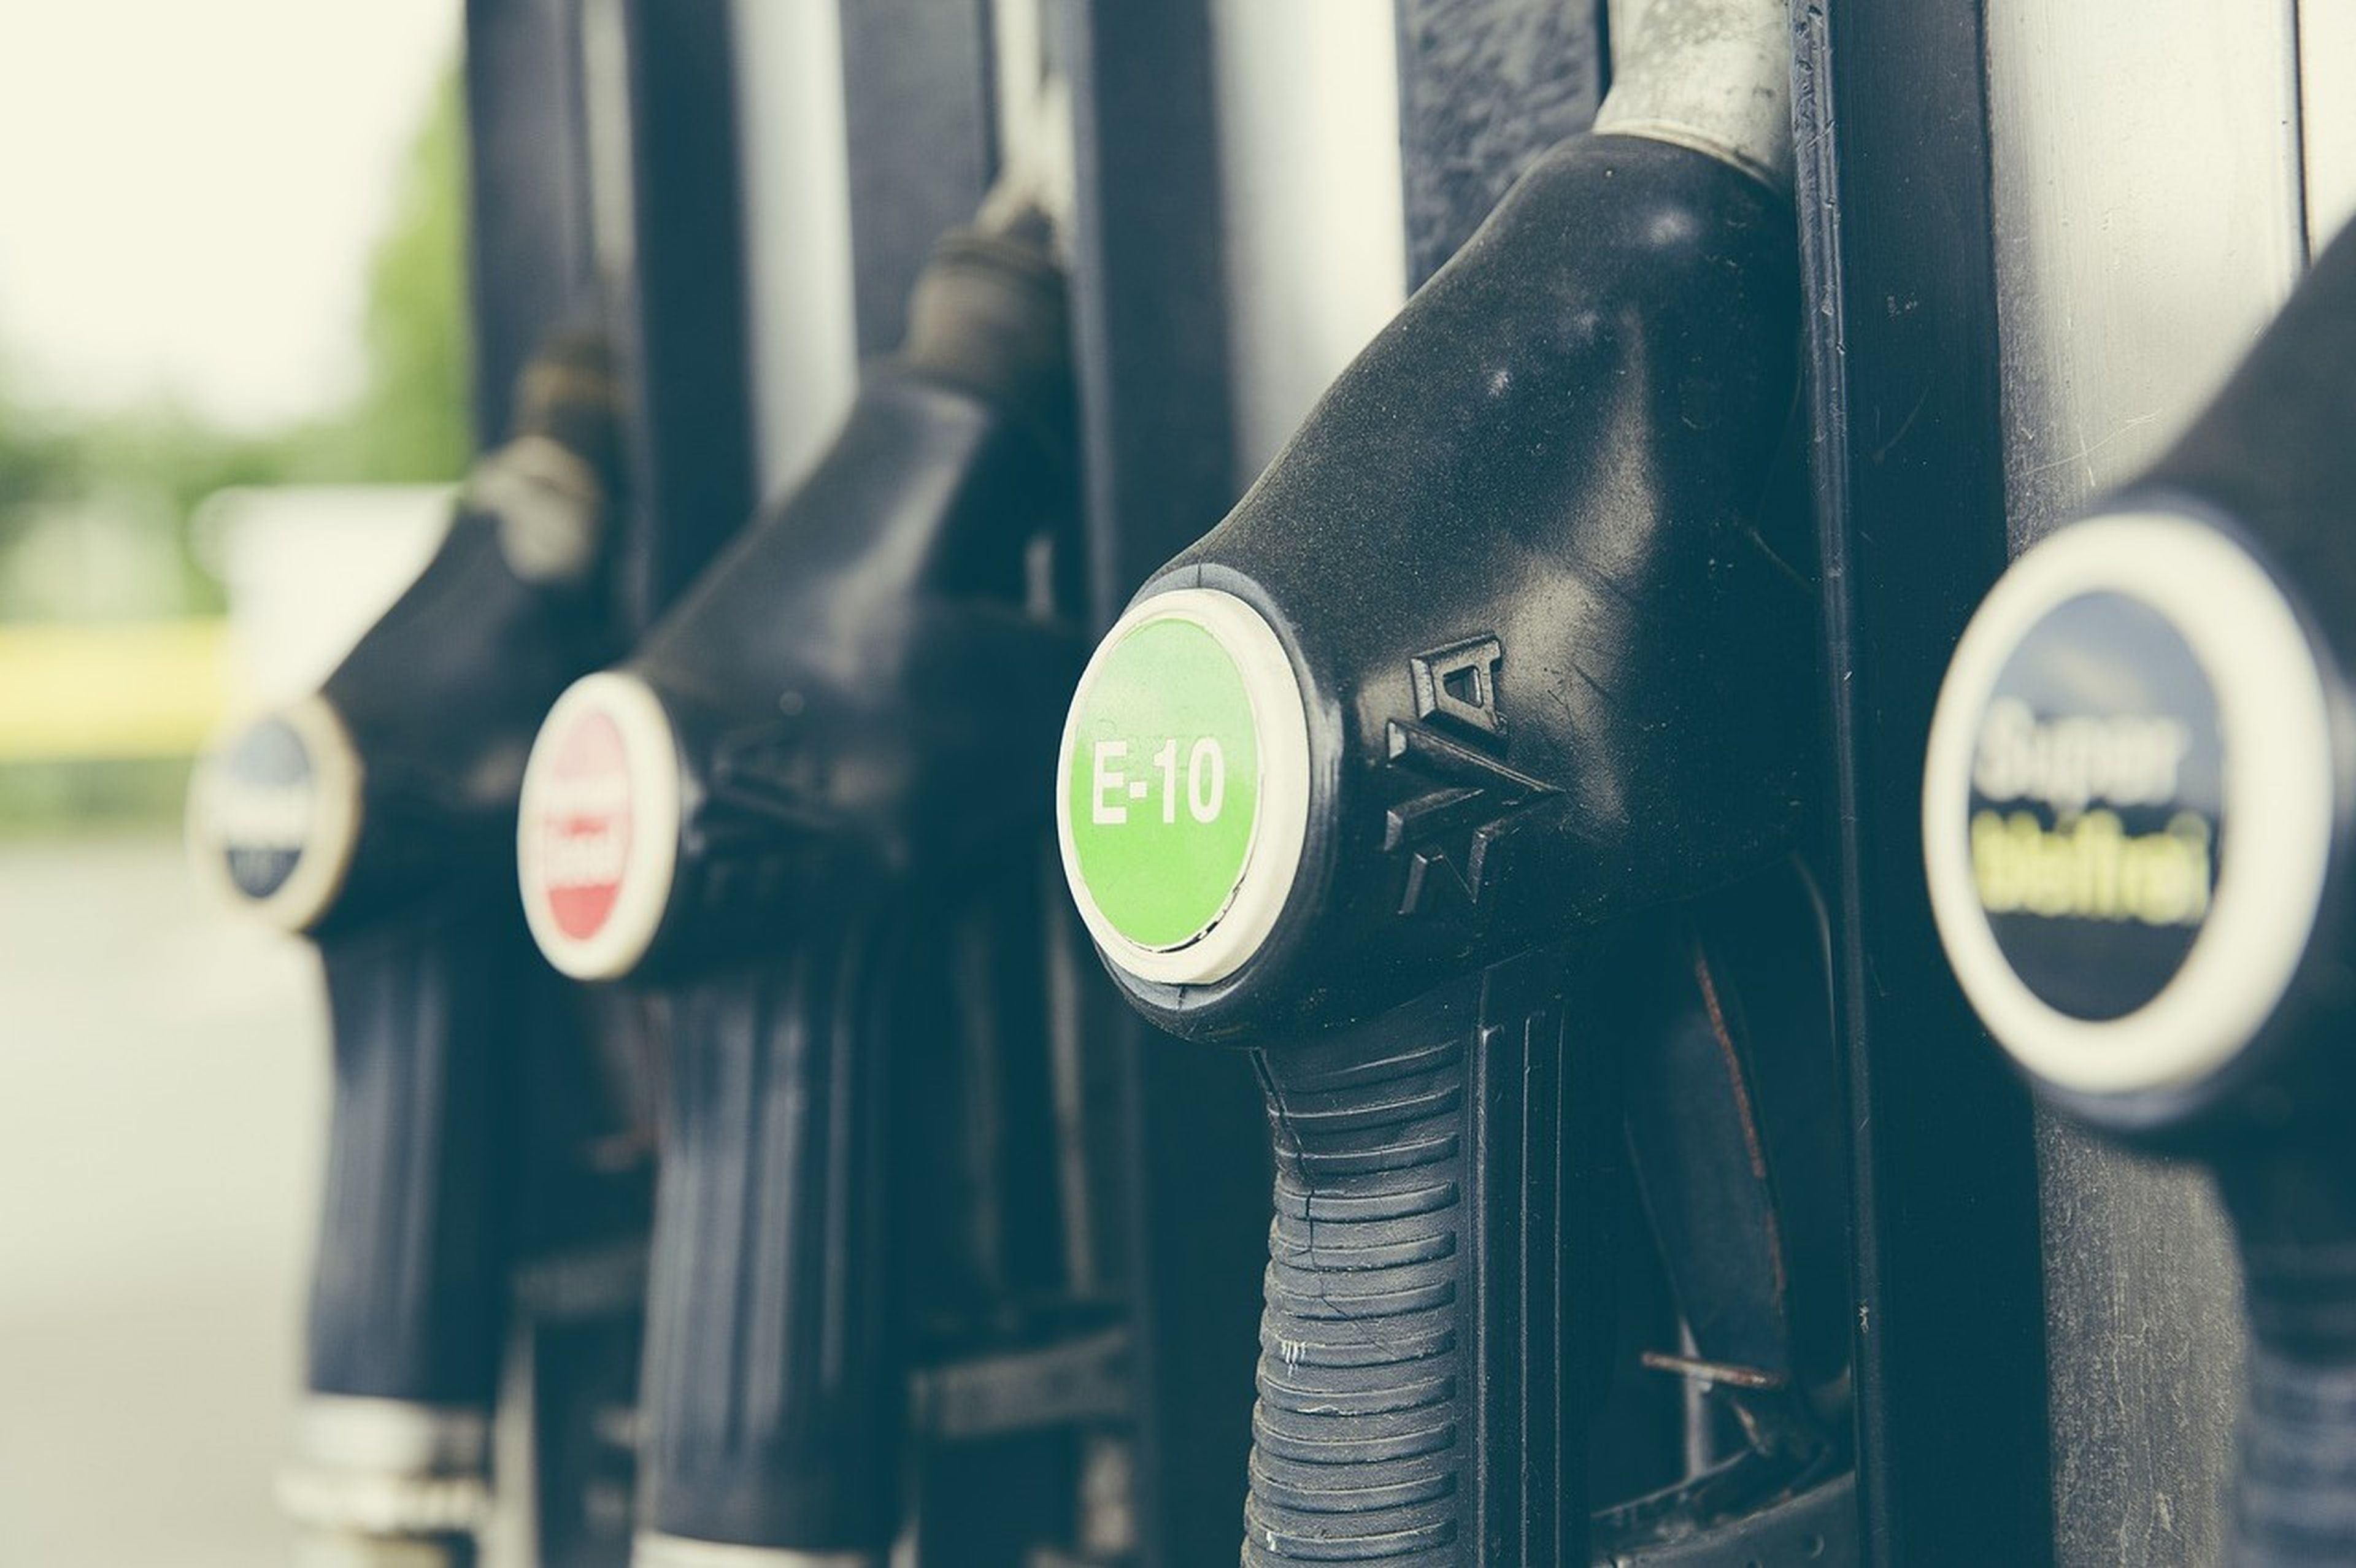 La DGT da 5 consejos para ahorrar gasolina y hacer frente a la inflación